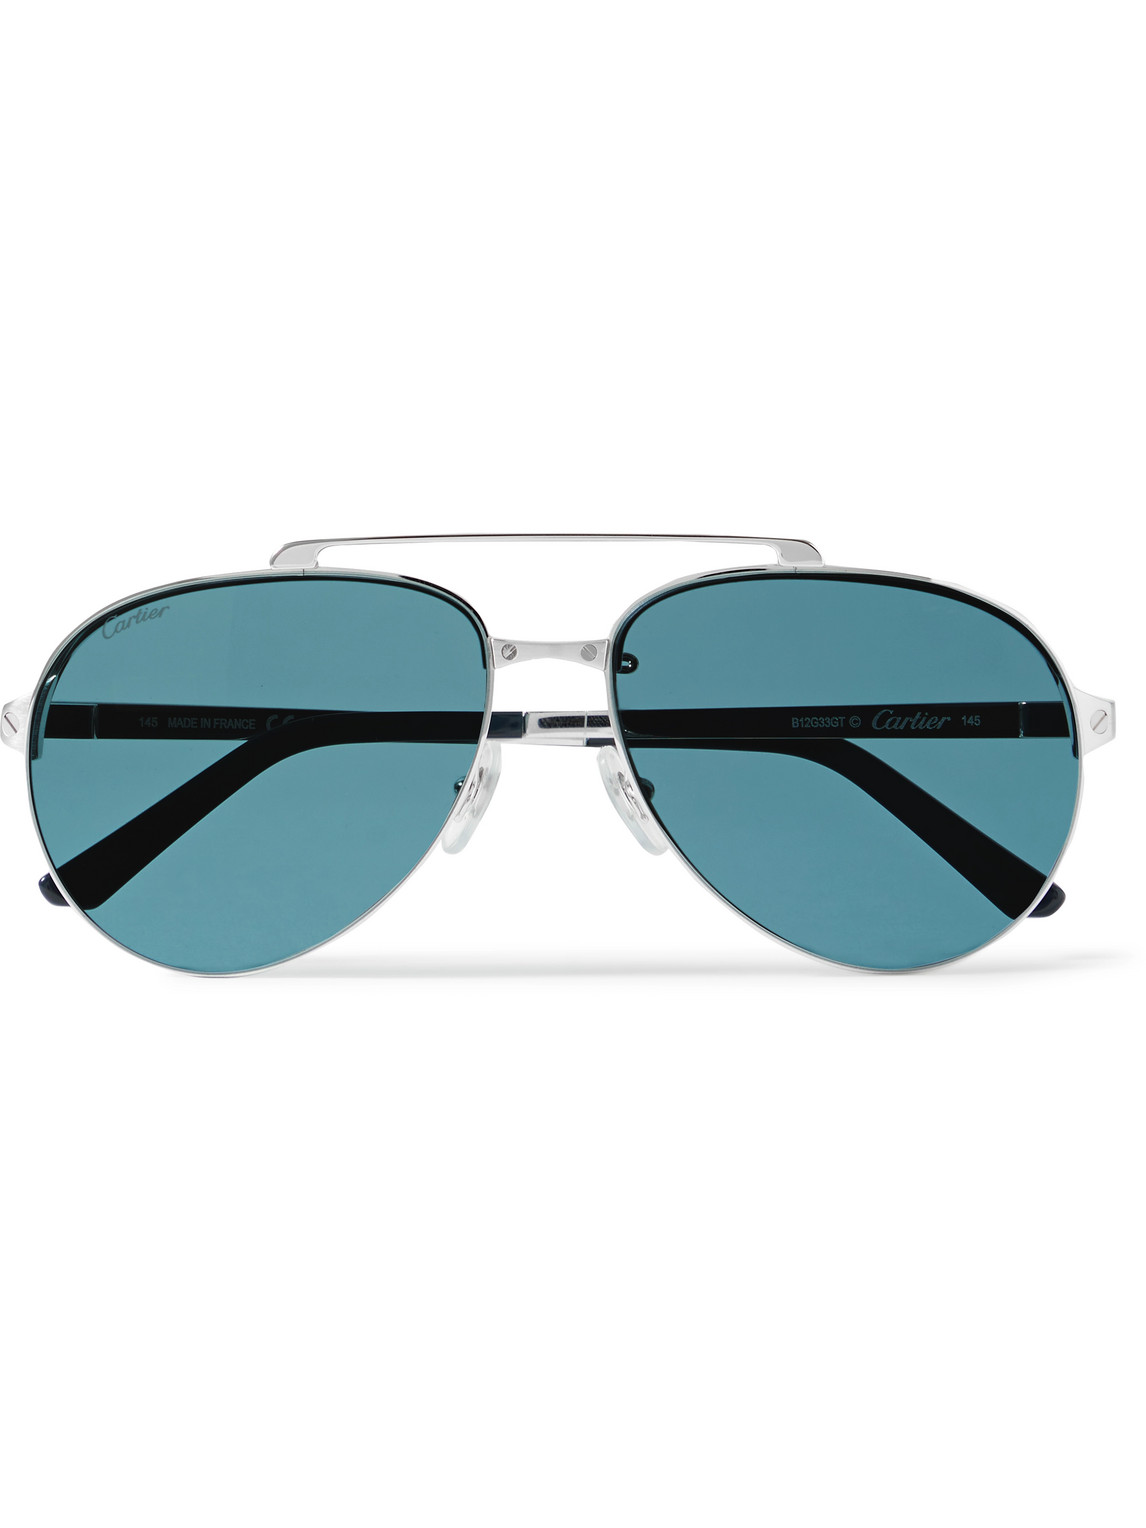 Cartier Santos Evolution Aviator-style Silver-tone Sunglasses